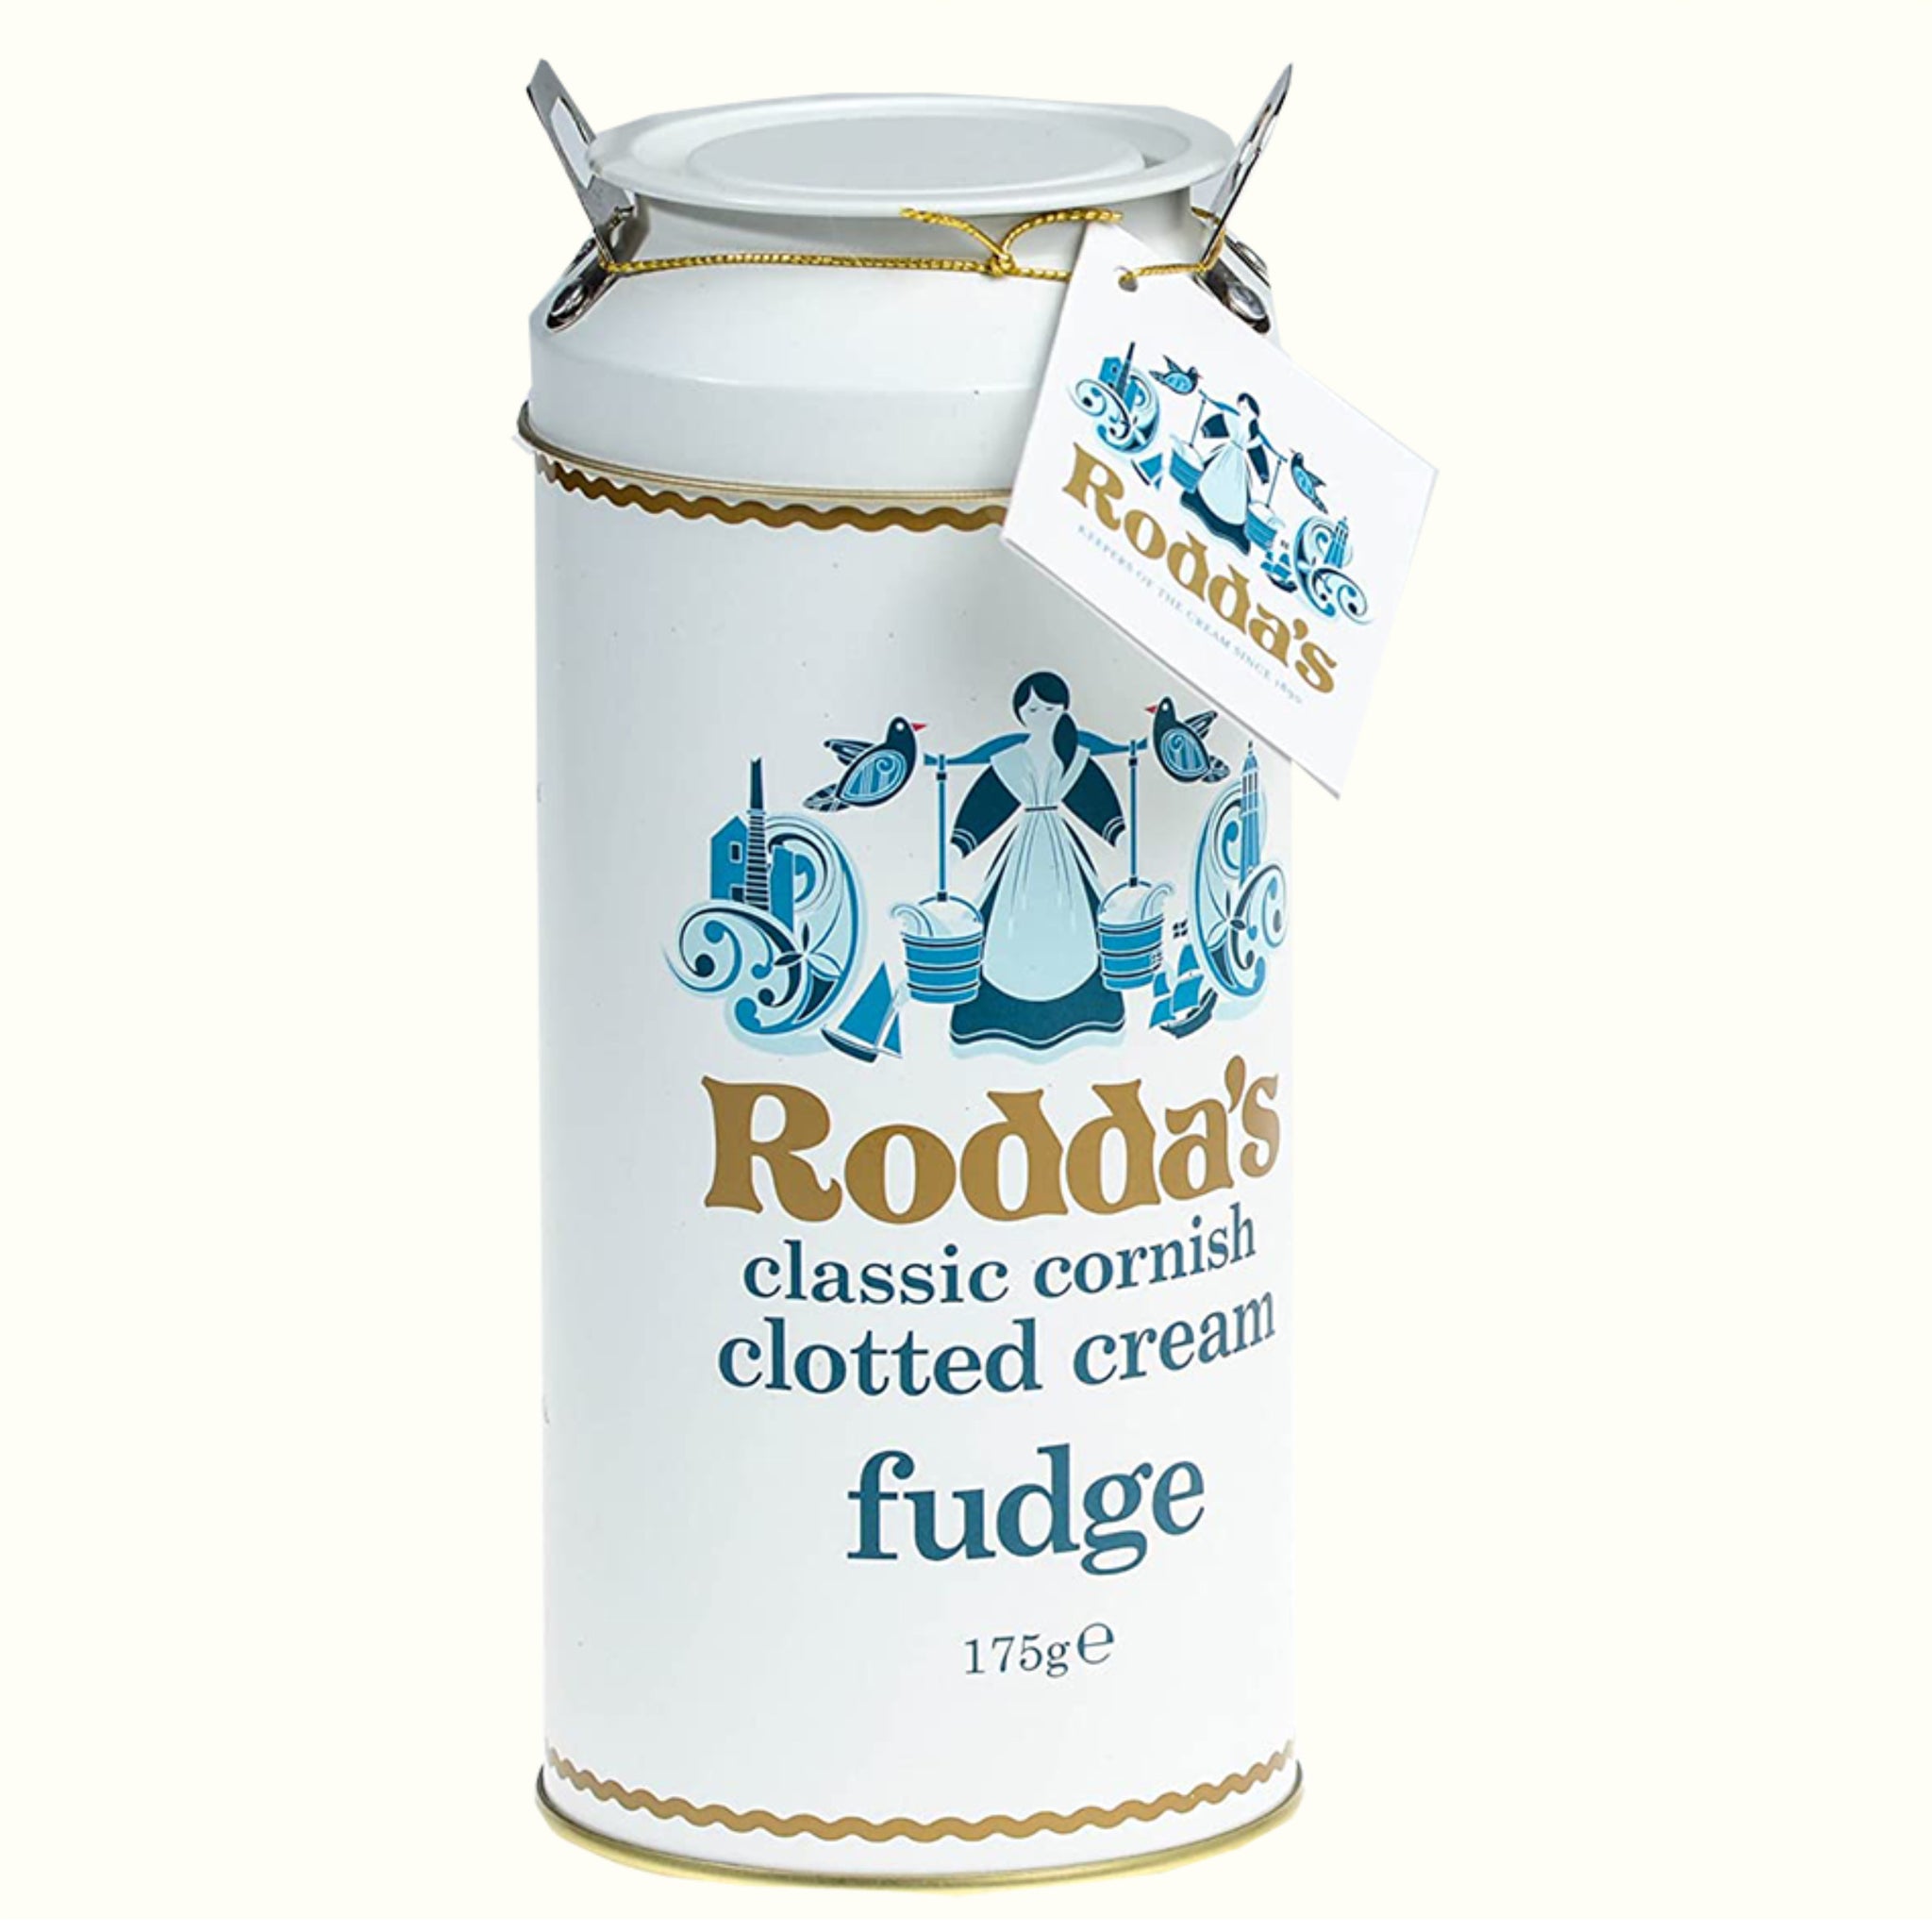 Roddas Clotted Cream Fudge 175g